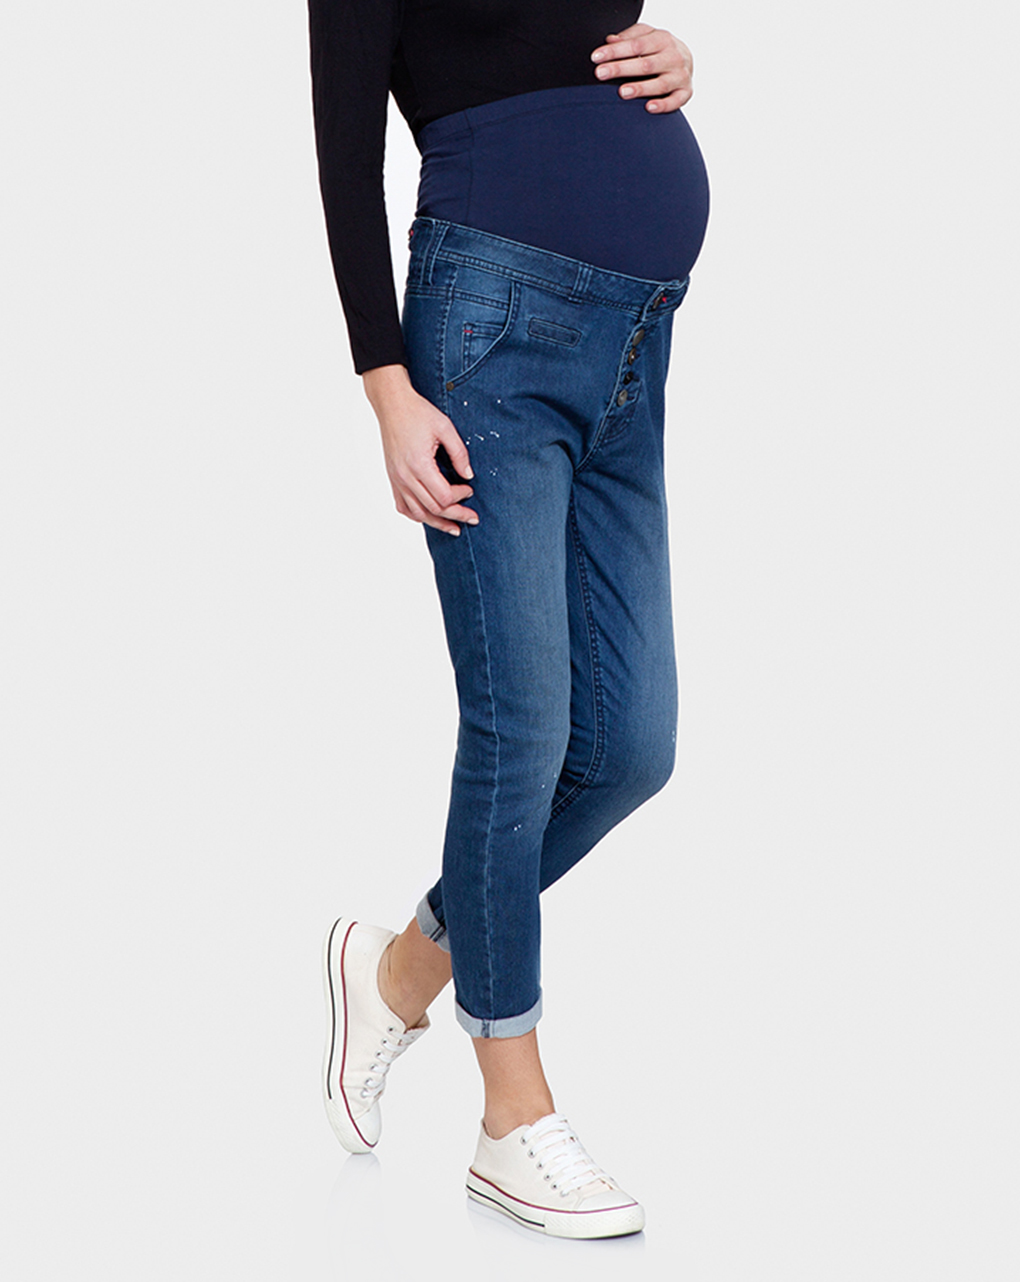 γυναικείο παντελόνι εγκυμοσύνης denim μπλε σκούρο - Prénatal